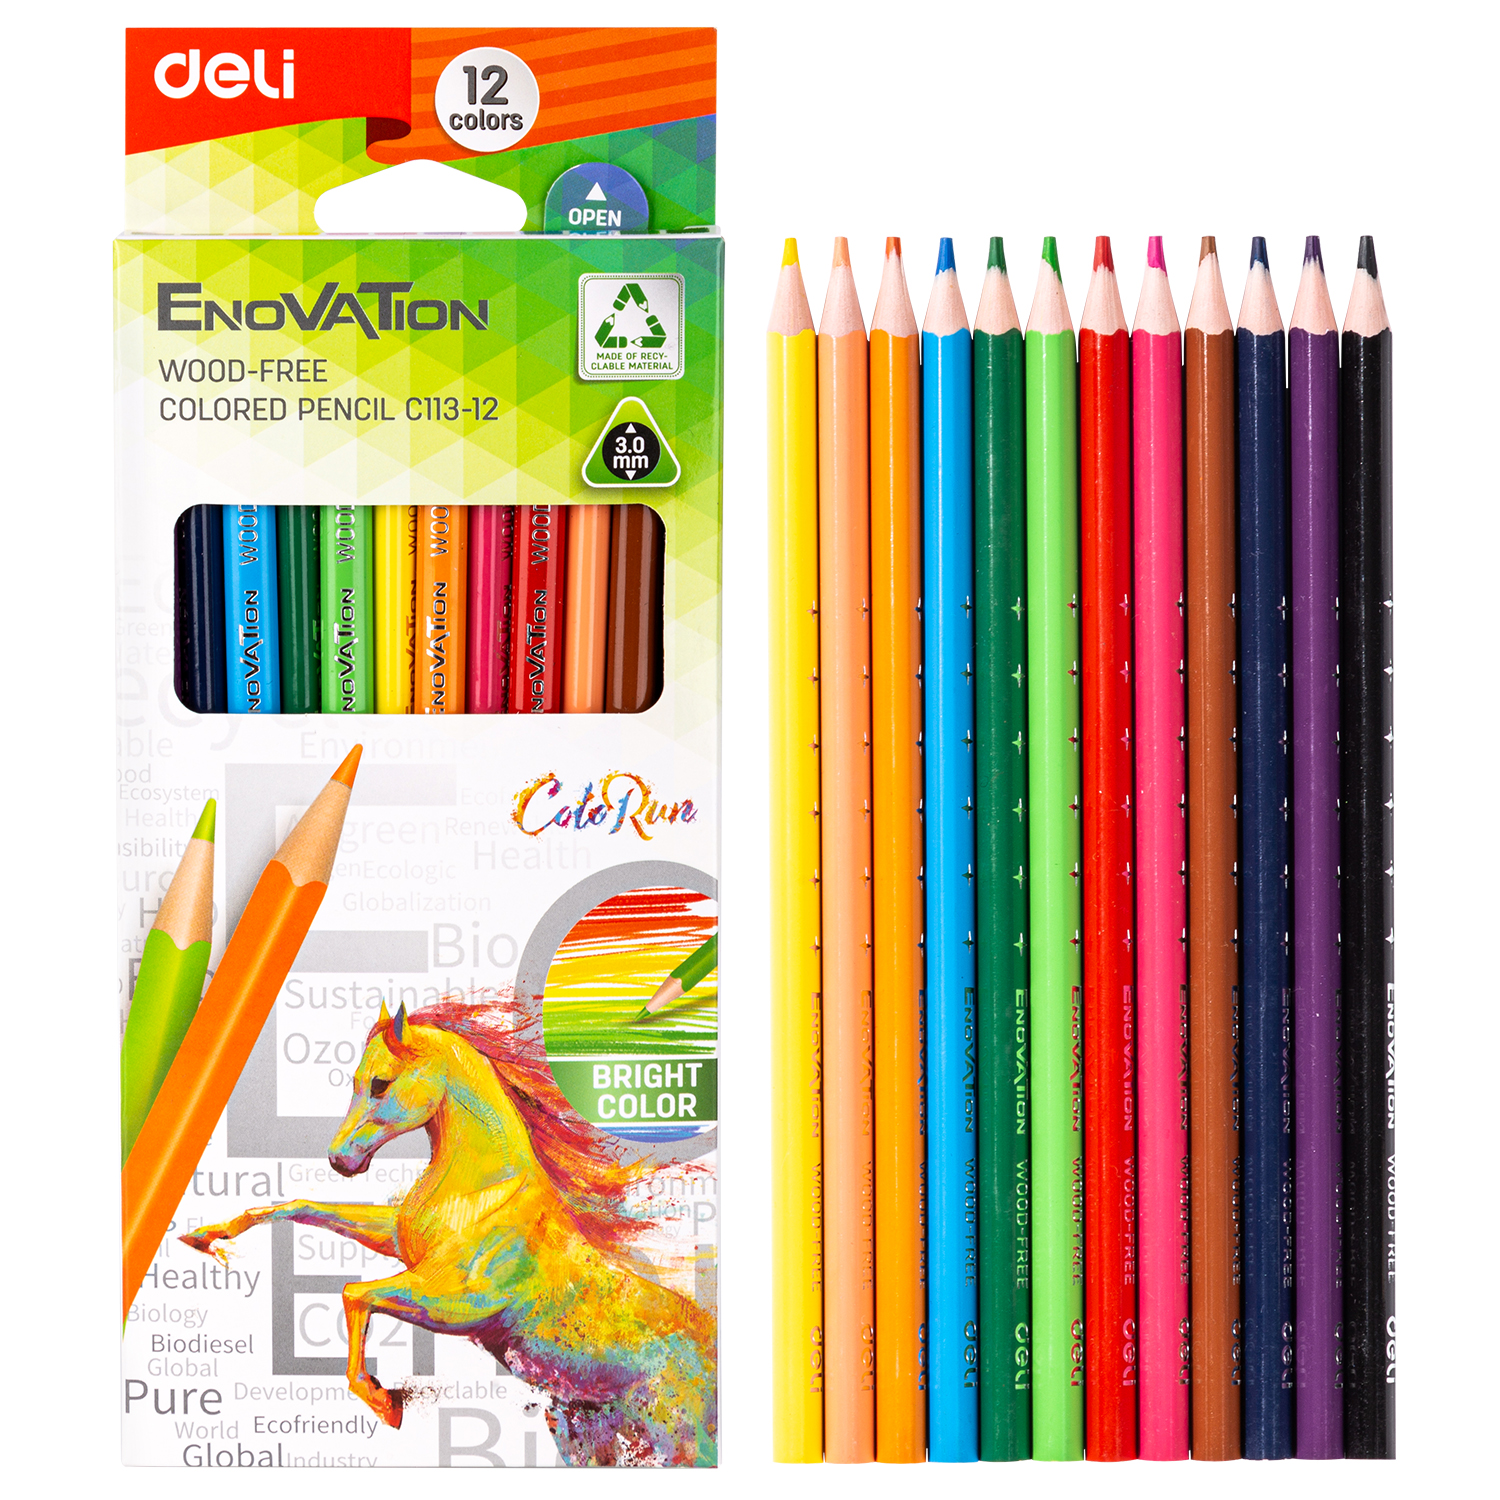 Deli-EC113-12 Colored Pencil